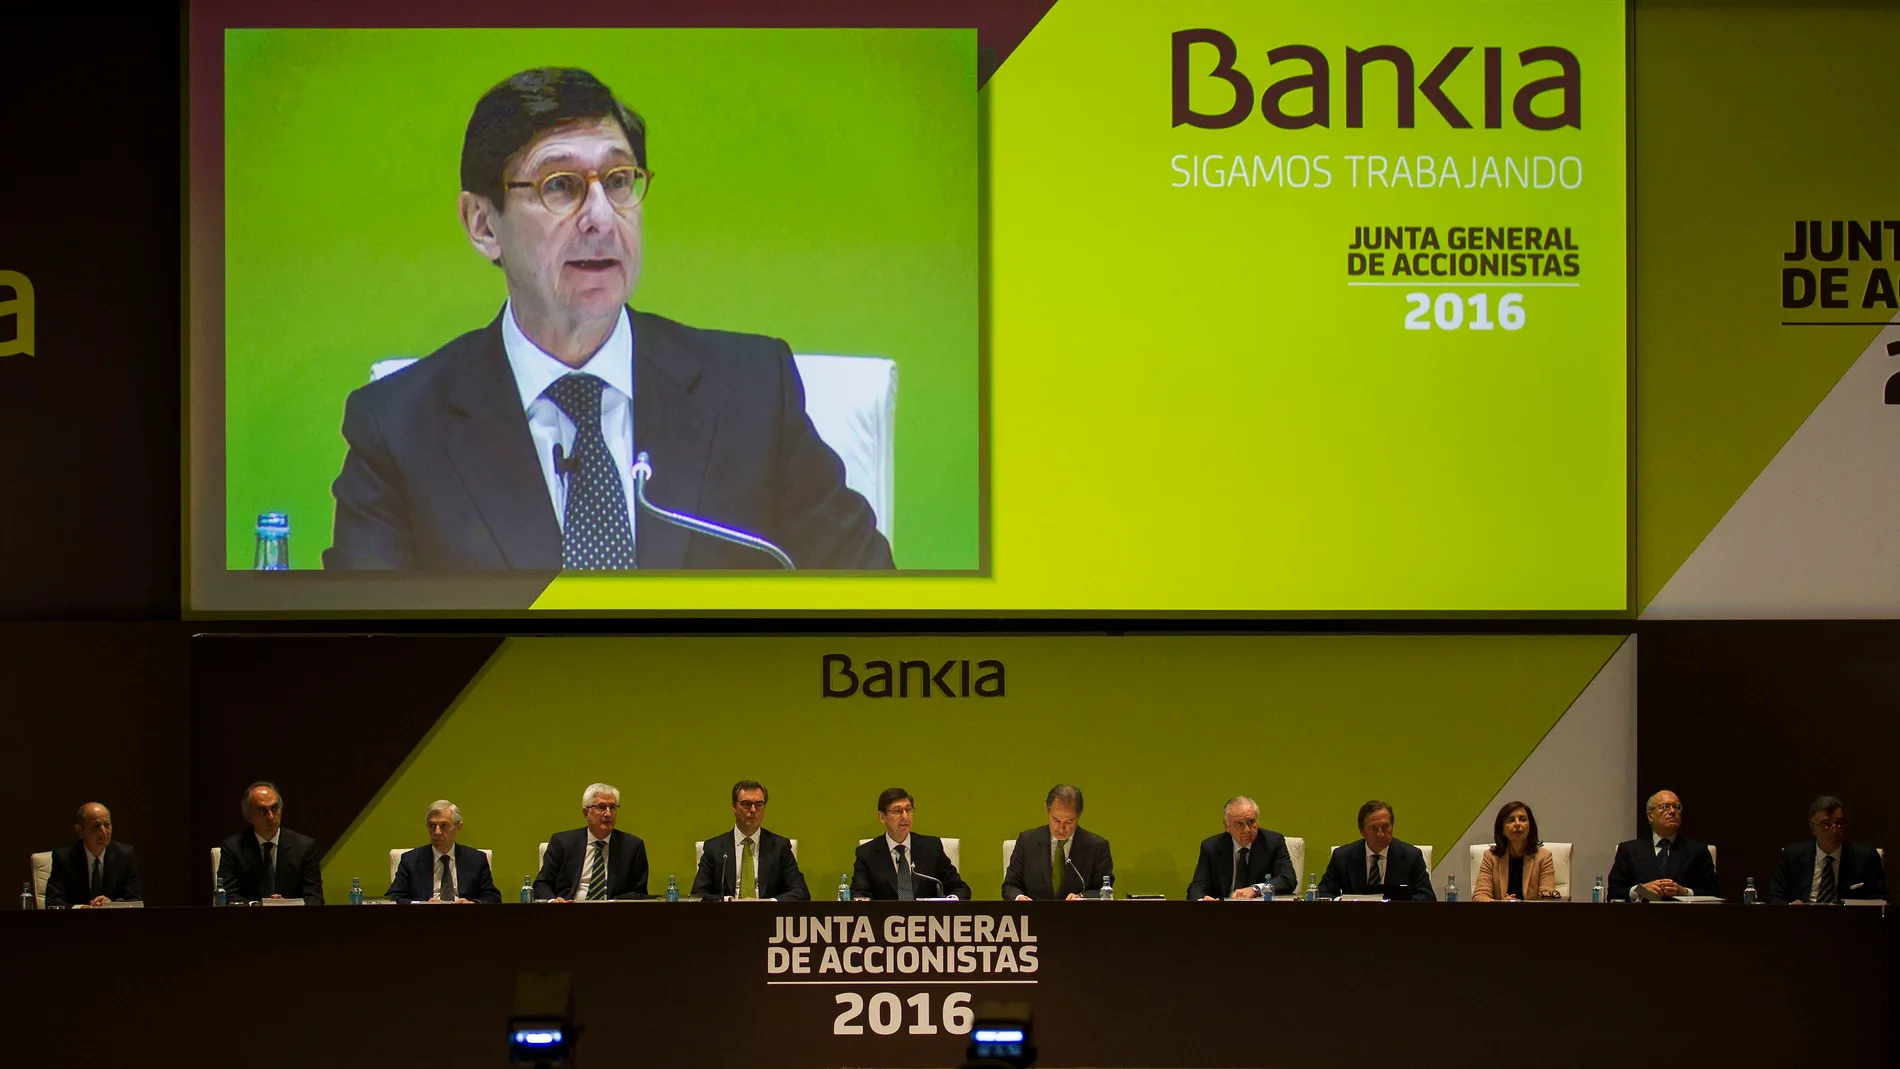 Junta general de accionistas de Bankia